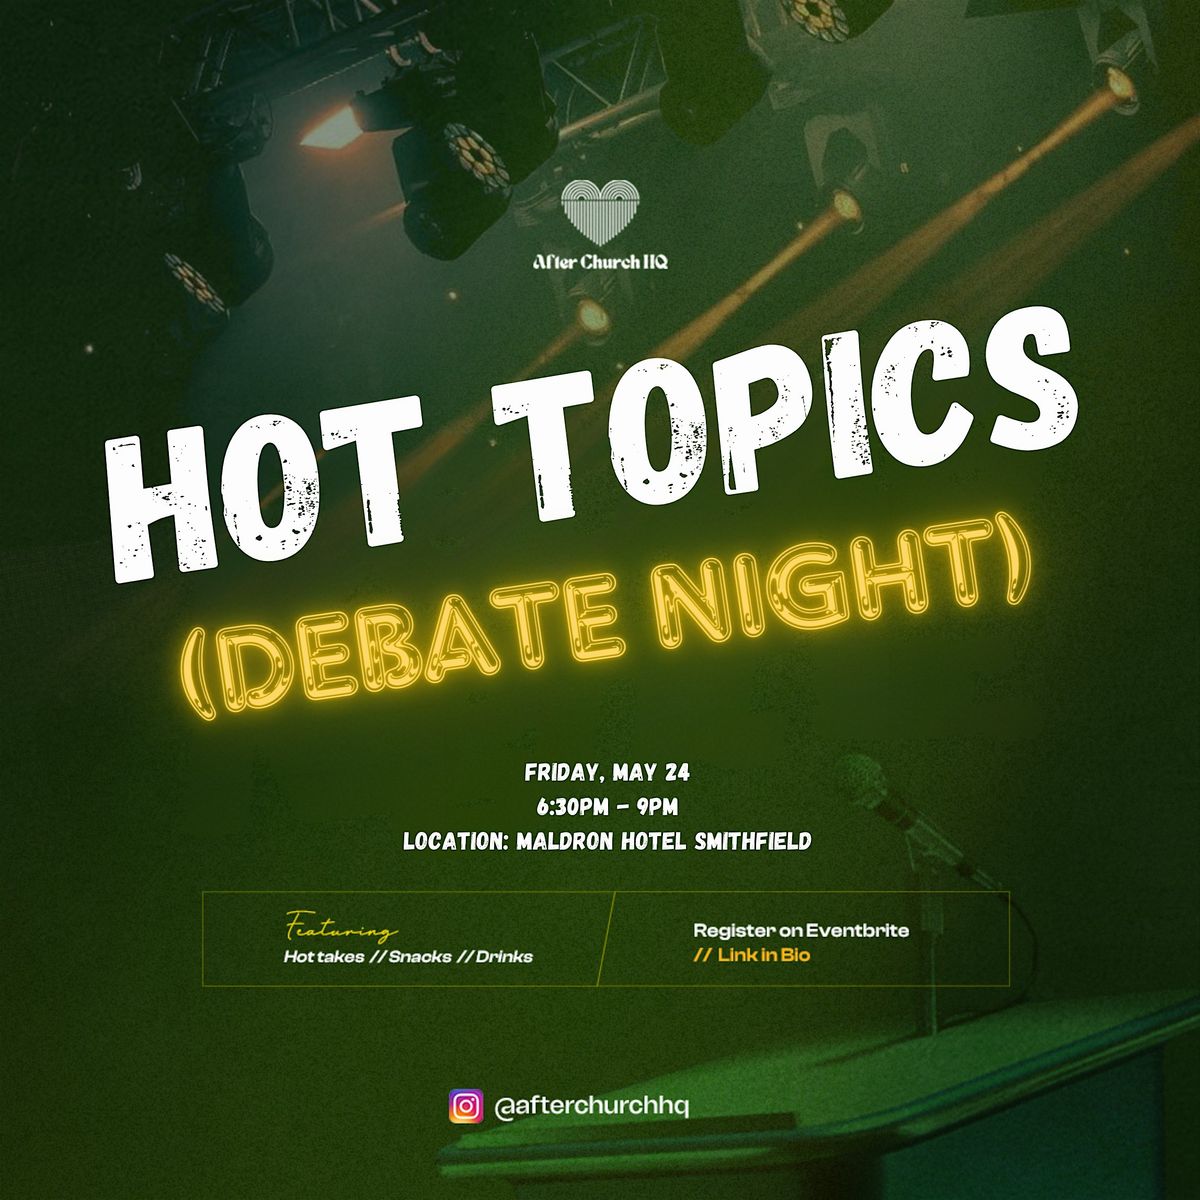 Hot Topics (Debate Night)